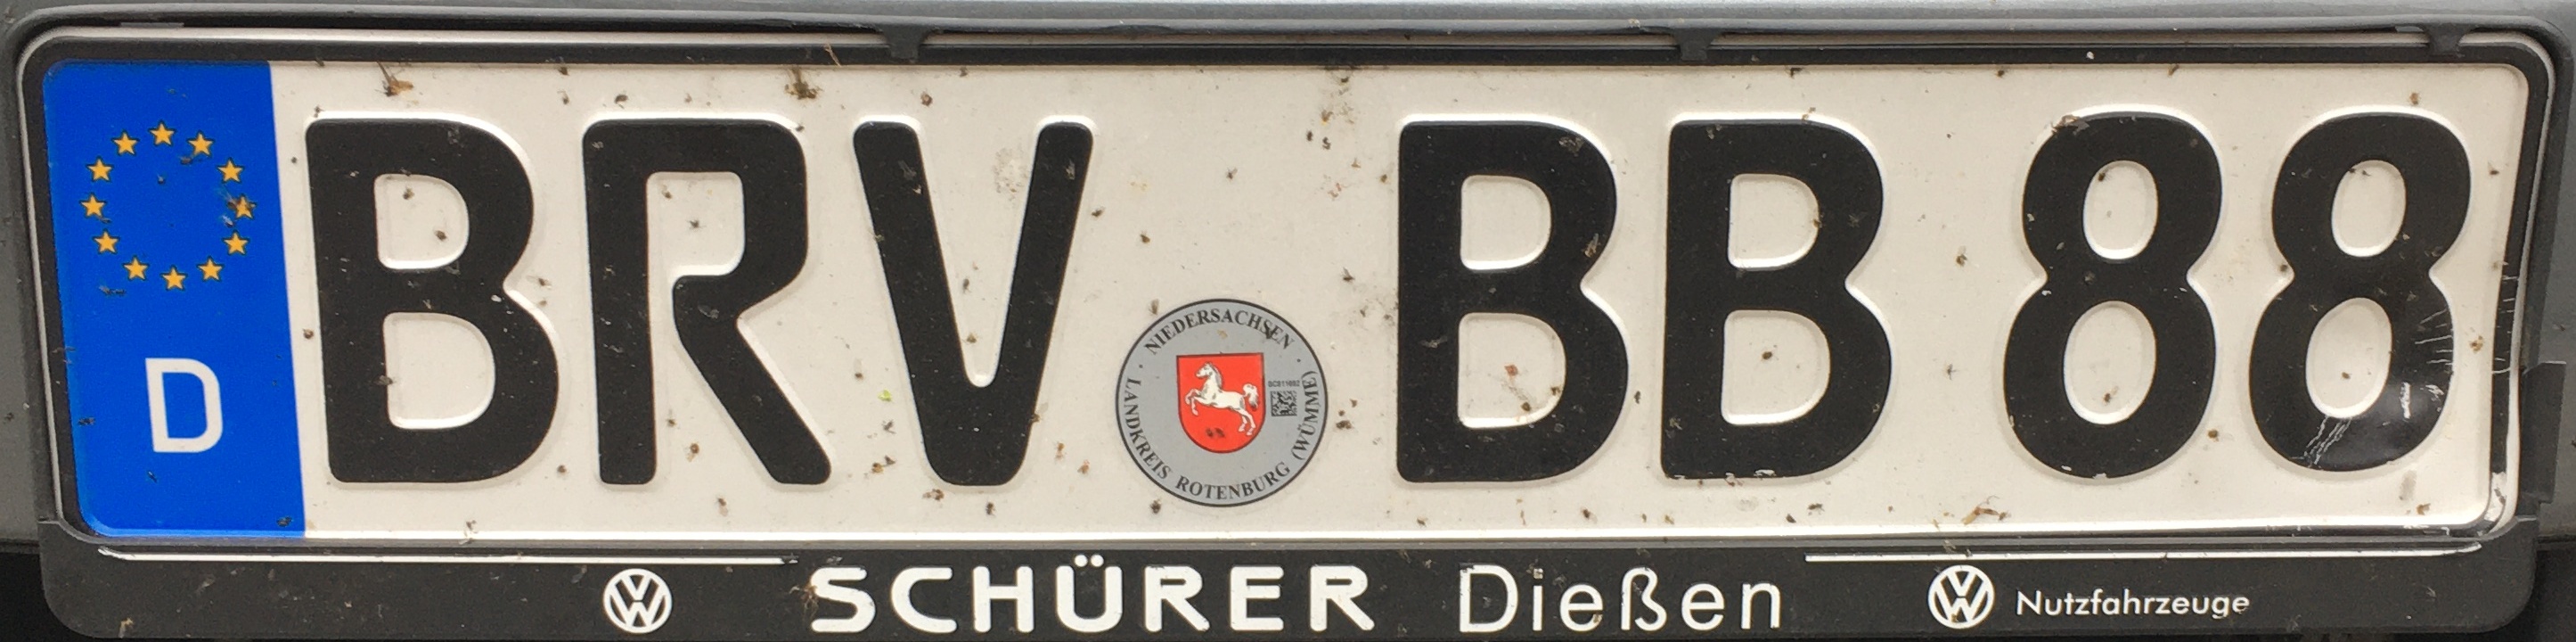 Registrační značky Německo - BRV - Bremervörde, foto: www.podalnici.cz